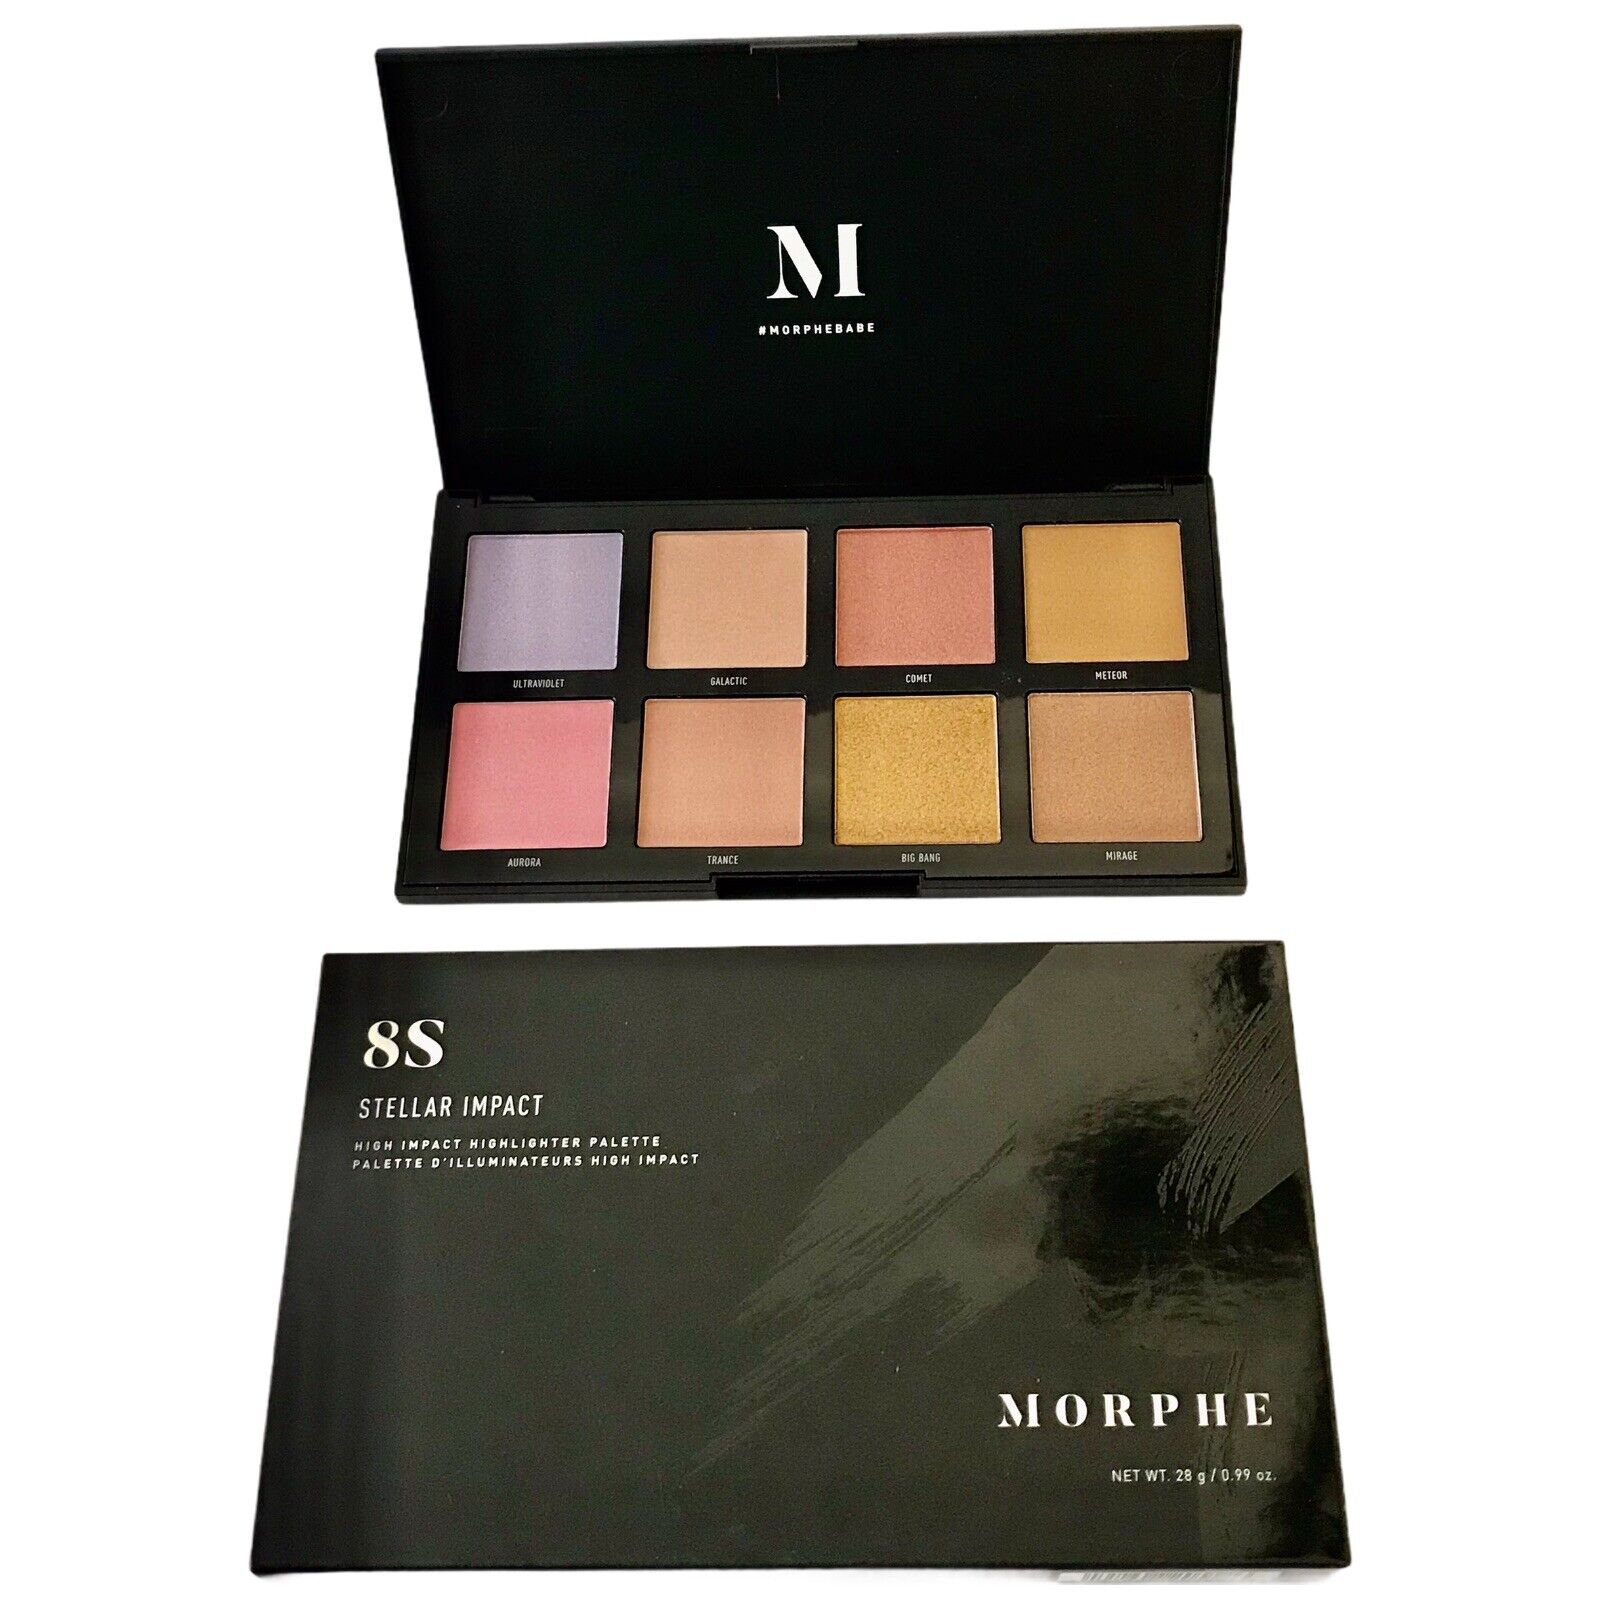 MORPHE 8S Stellar Impact Highlighter Palette New In Box